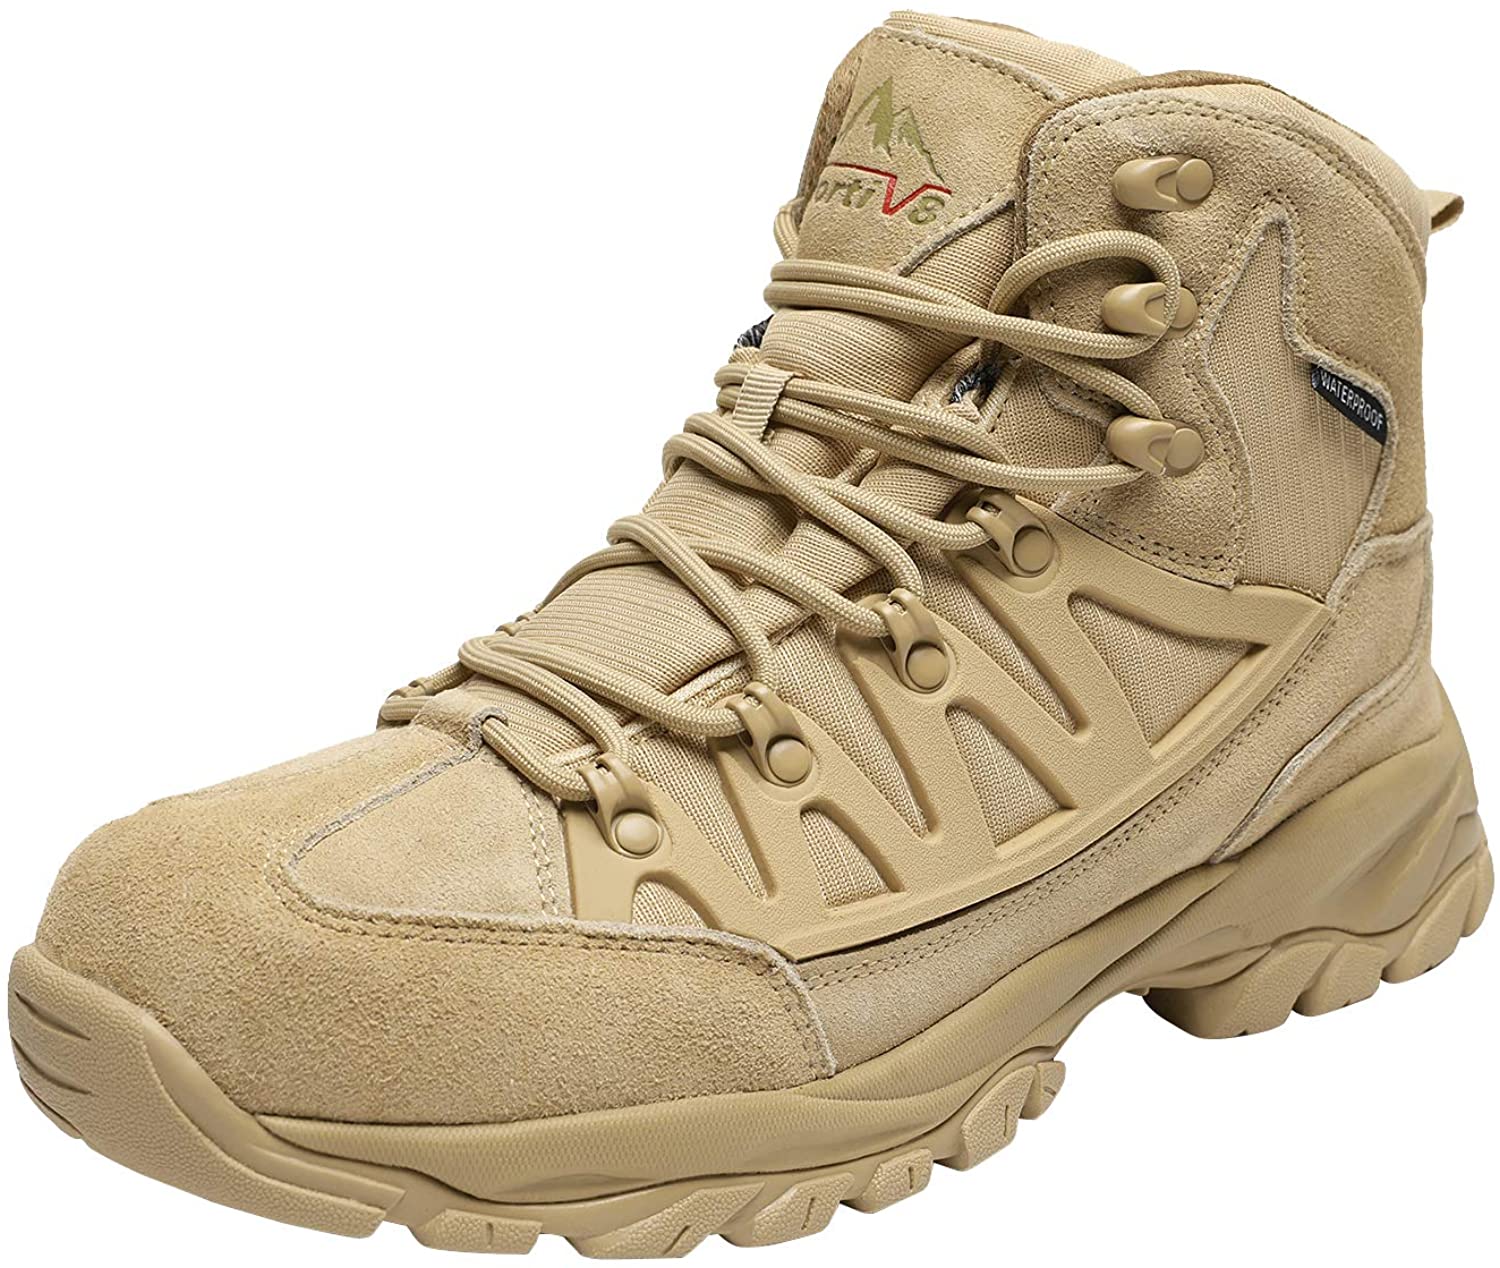 NORTIV 8 Men's Waterproof Hiking Boots Lightweight Mid Ankle Trekking Outdoor Tactical Combat Boots 